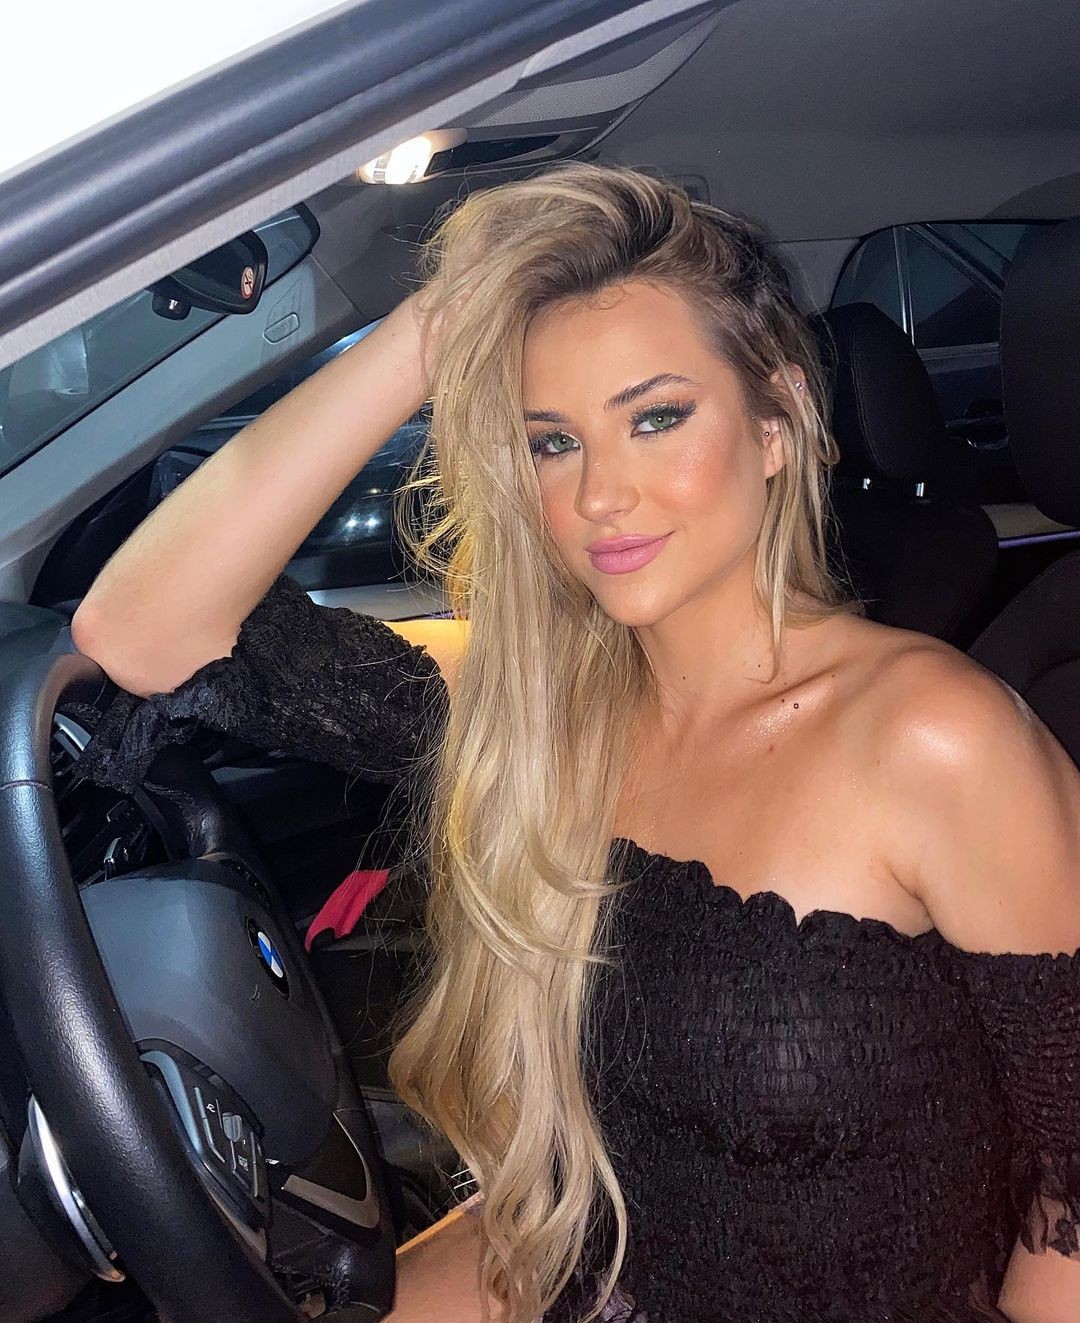 Gabi Martins posa linda dentro de carro e brinca: "Se me vissem oferecendo carona" (Foto: Reprodução/Instagram)